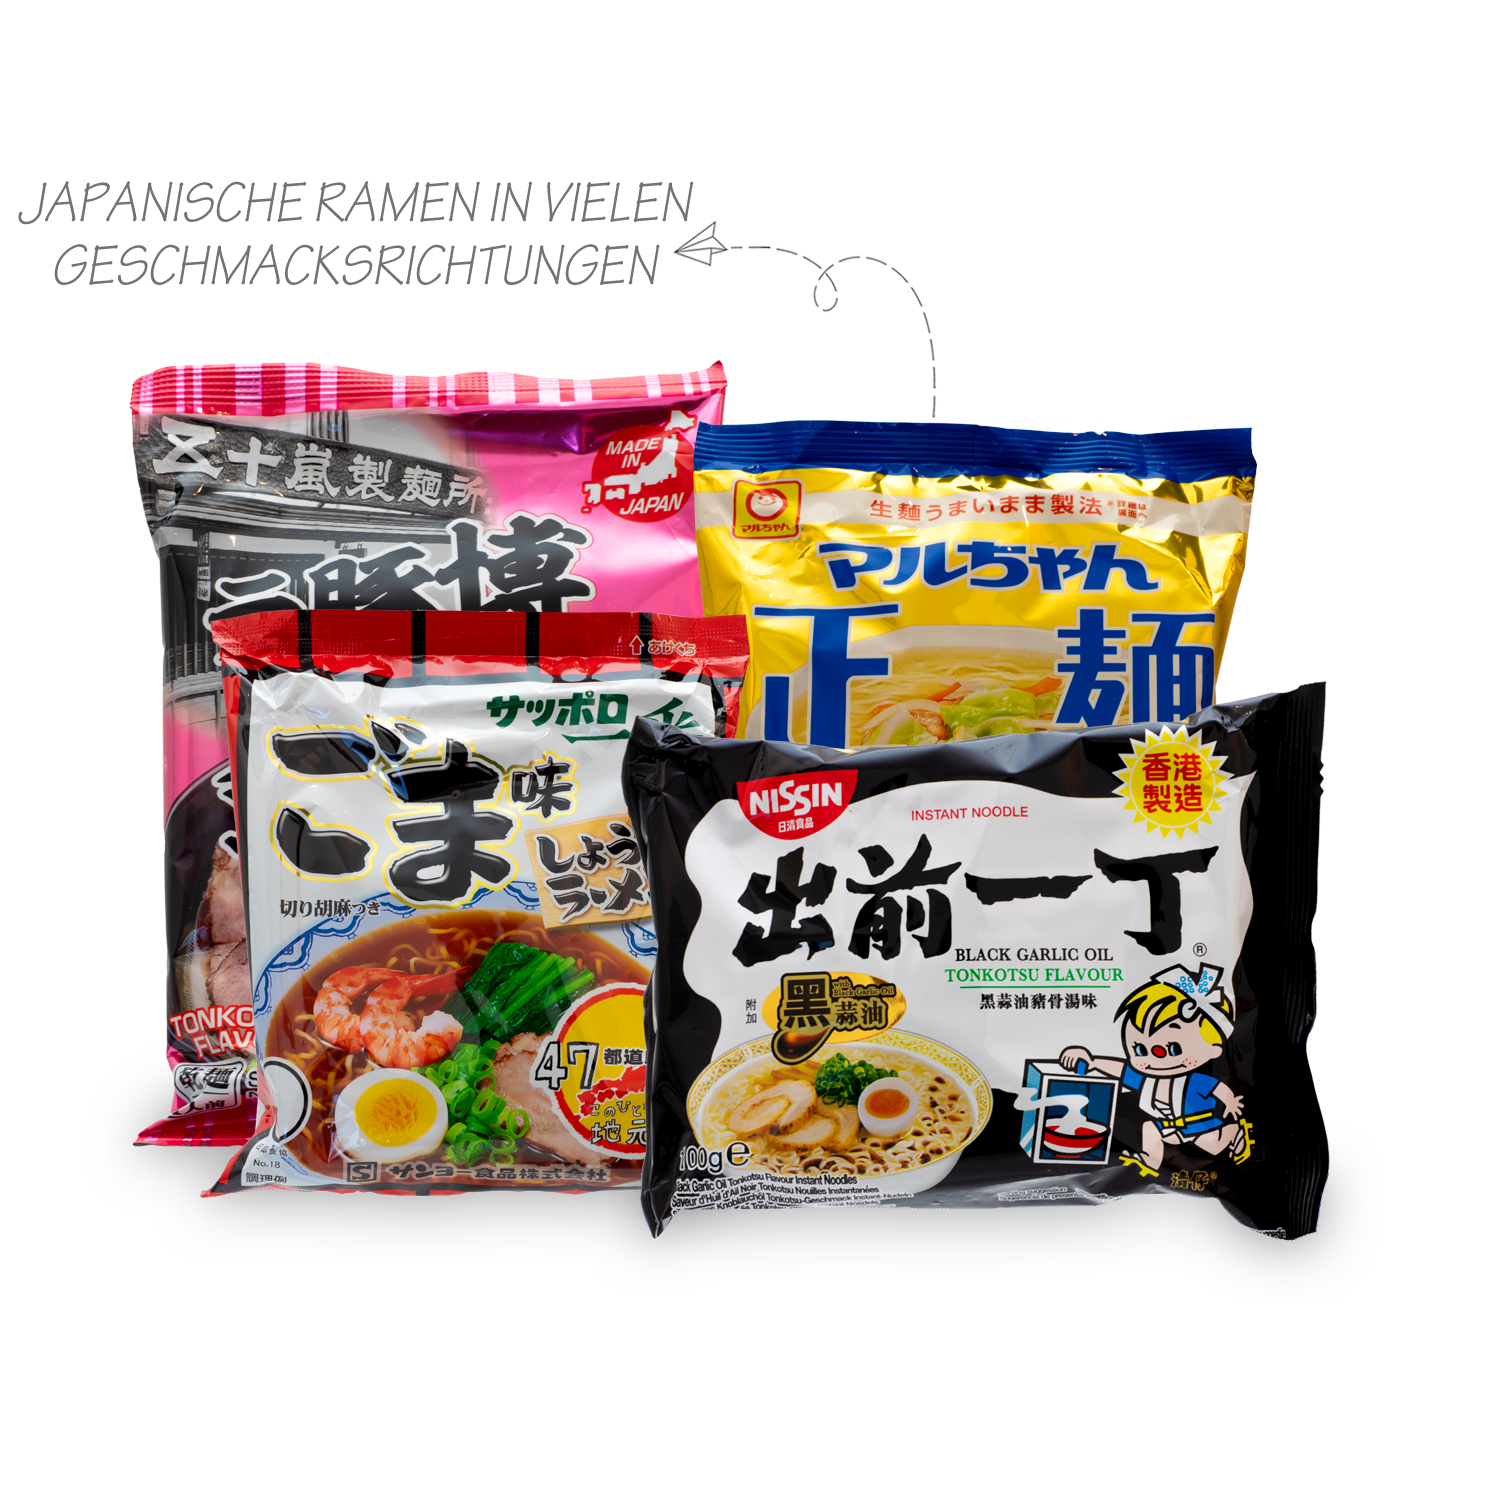 Noodle Experience: 3 Nudelboxen aus Japan, Korea und Thailand